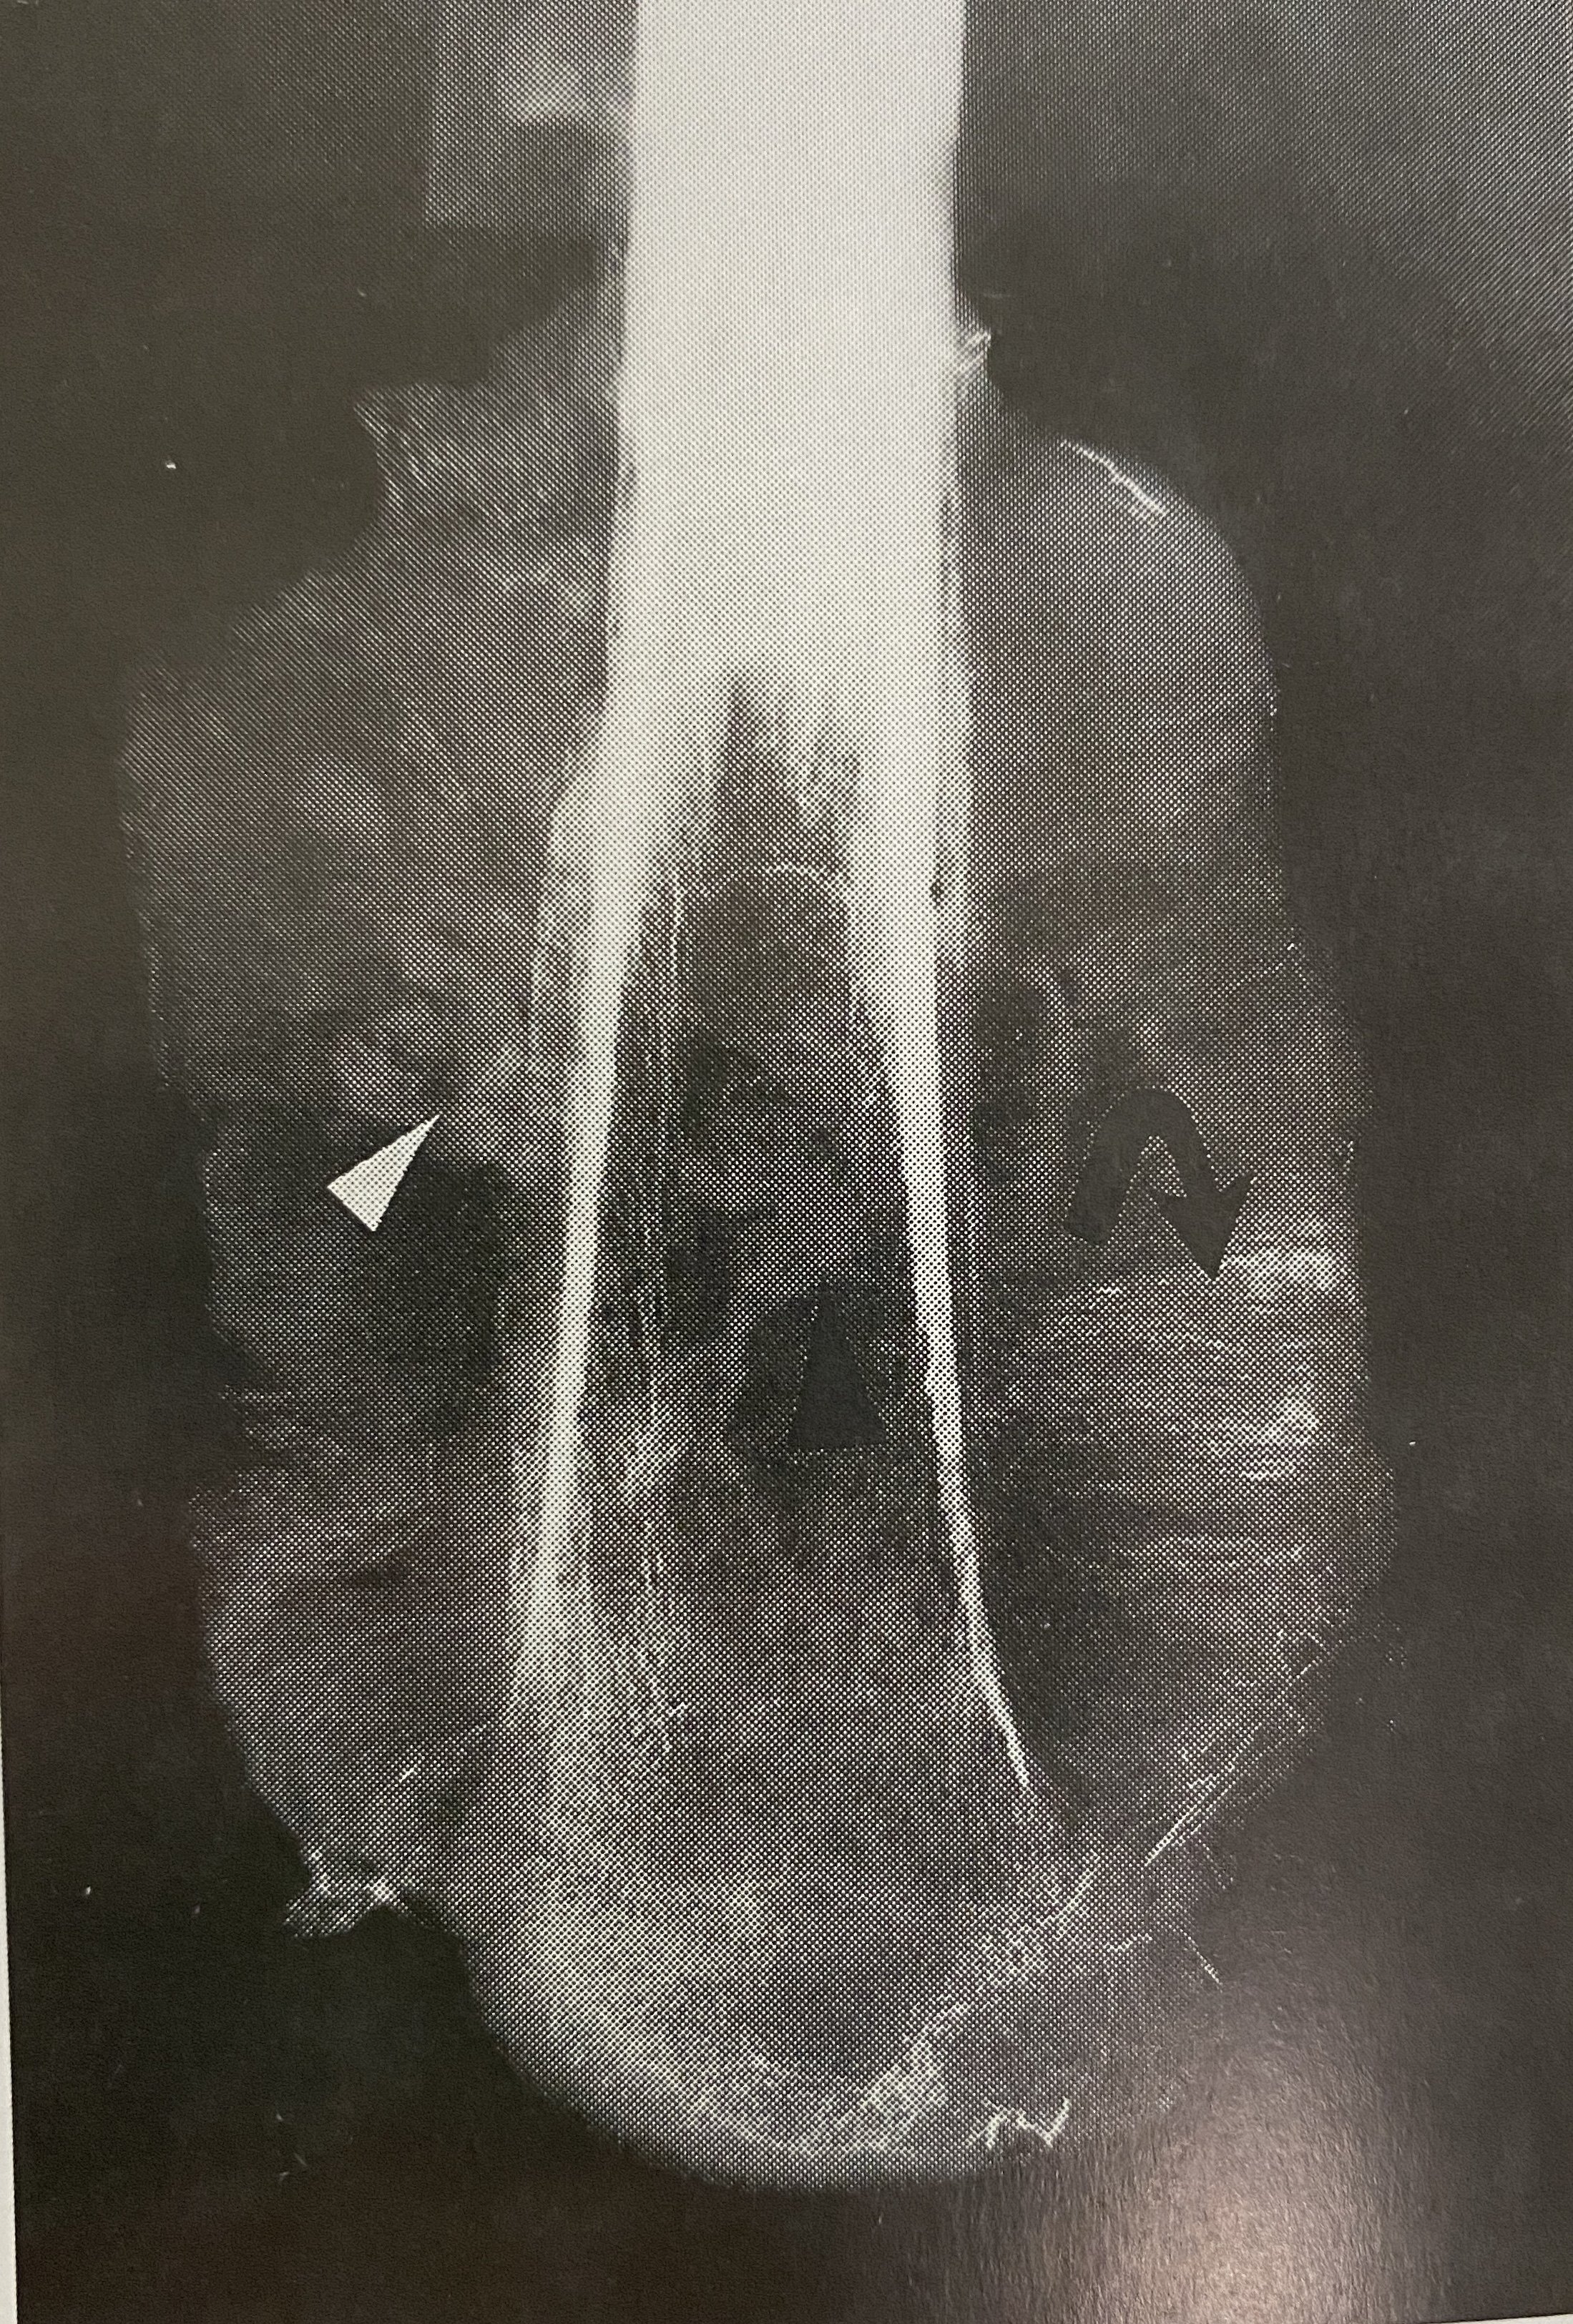 骨肉瘤象牙质样瘤骨x线平片:股骨下段髓腔内有高密度象牙质样瘤骨